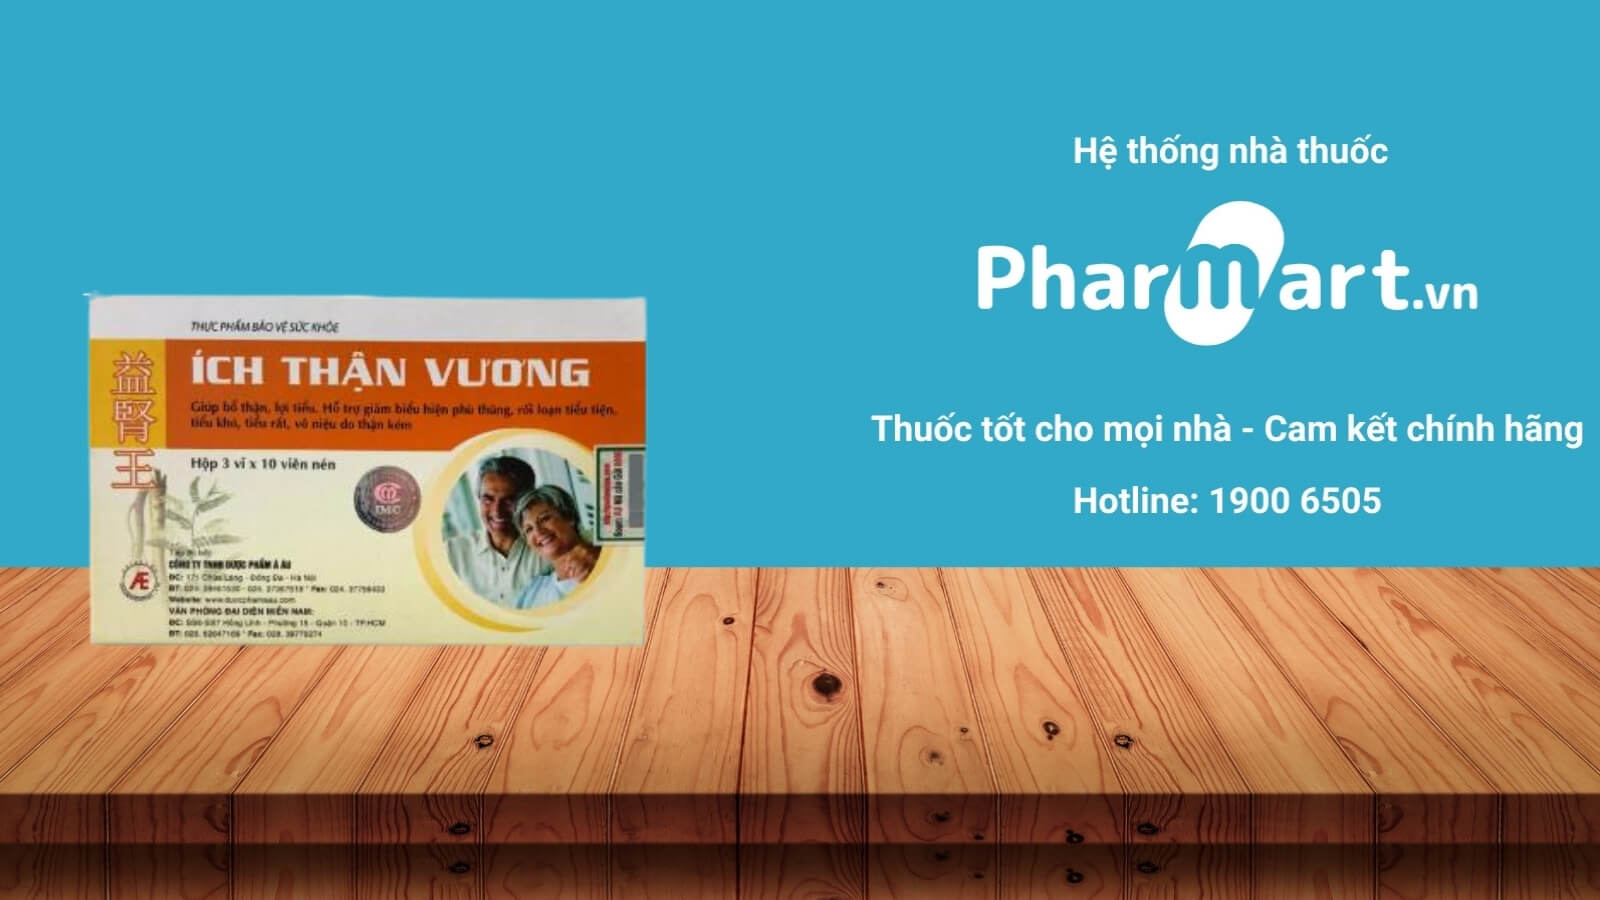 Mua ngay Ích Thận Vương chính hãng tại Pharmart.vn